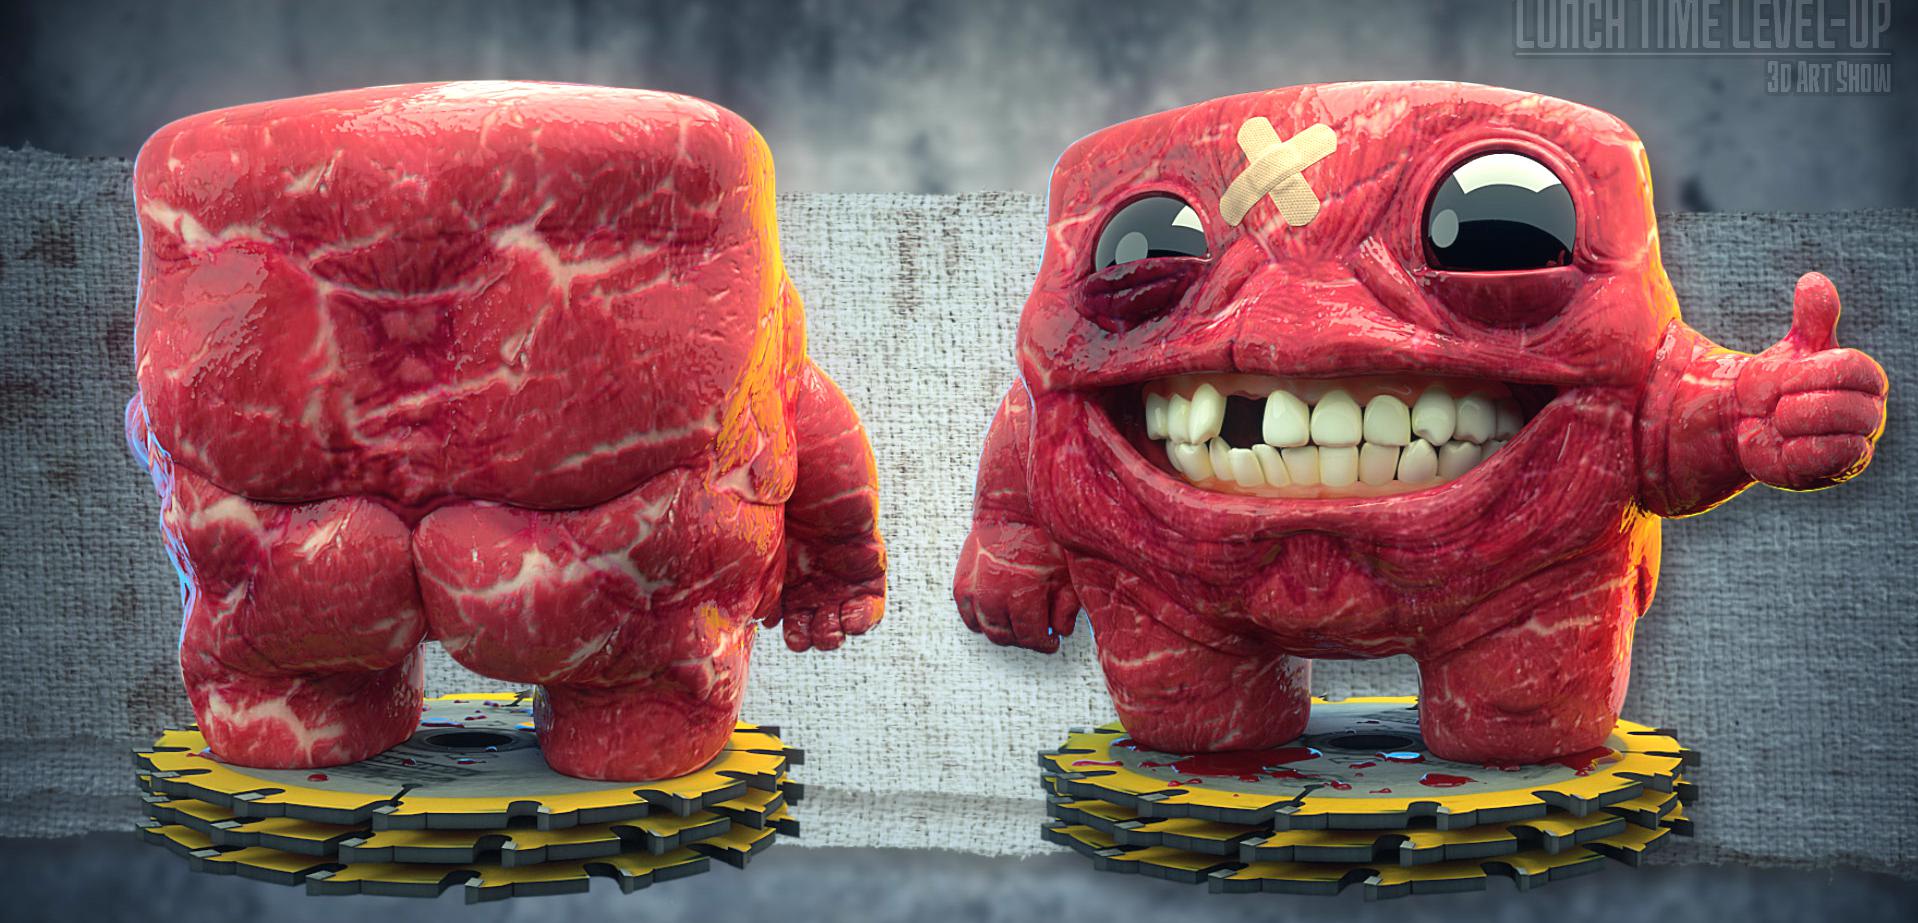 Po prawie 6 latach czekania Super Meat Boy z datą premiery na Wii U